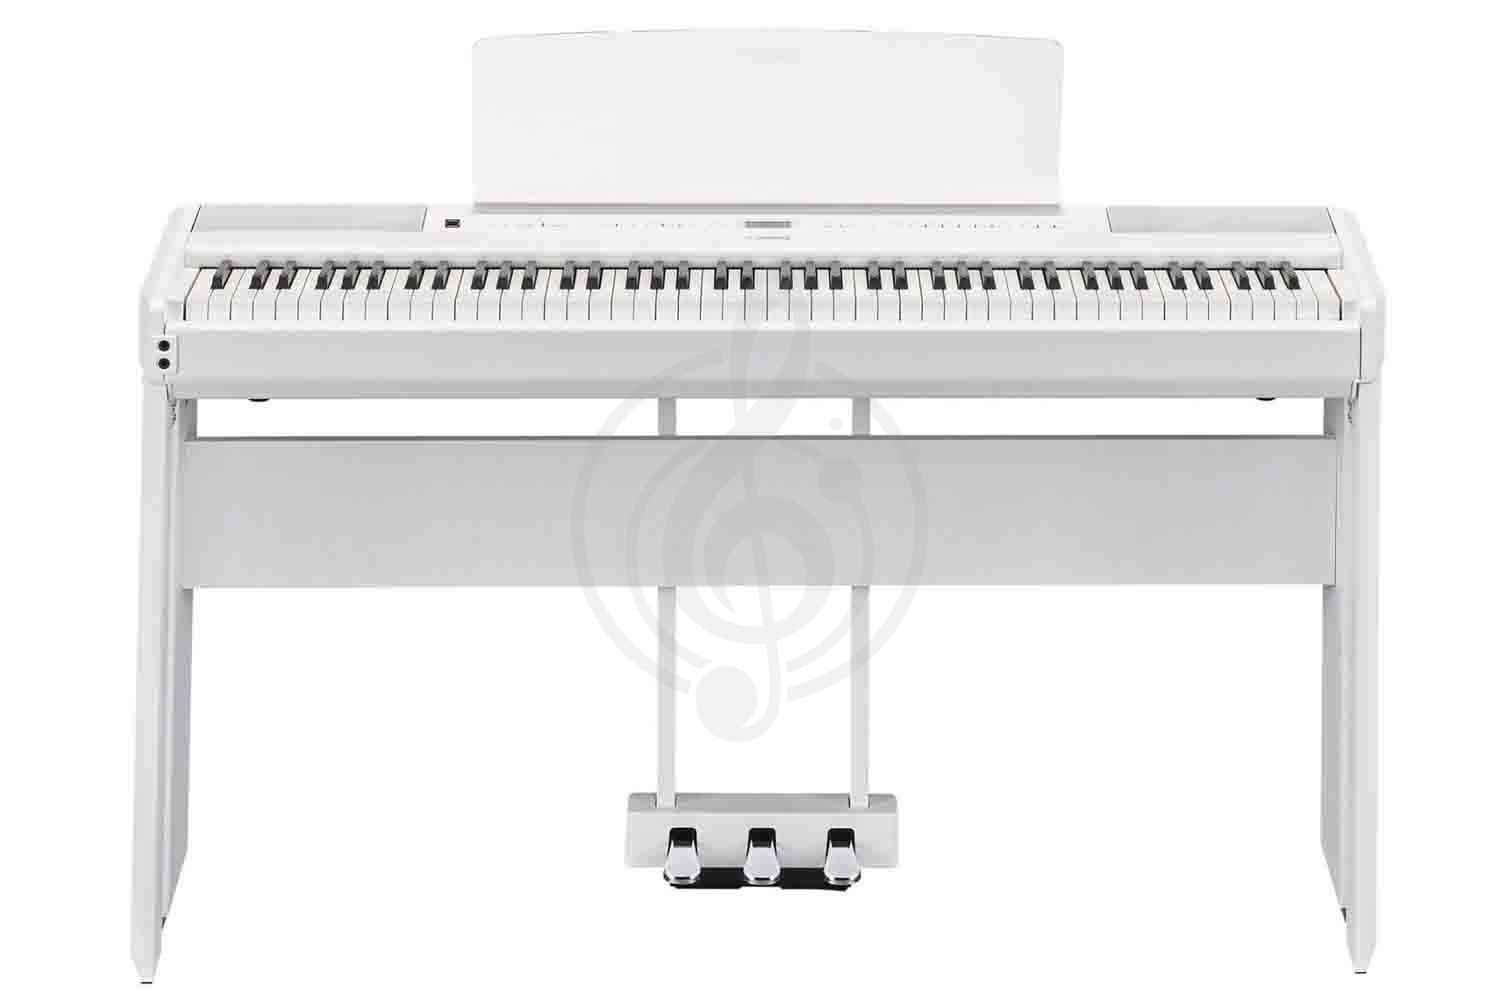 Цифровое пианино Цифровые пианино Yamaha Yamaha P-515WH Set - Комплект цифровое пианино, блок педалей и стойка P-515WH Set - фото 1